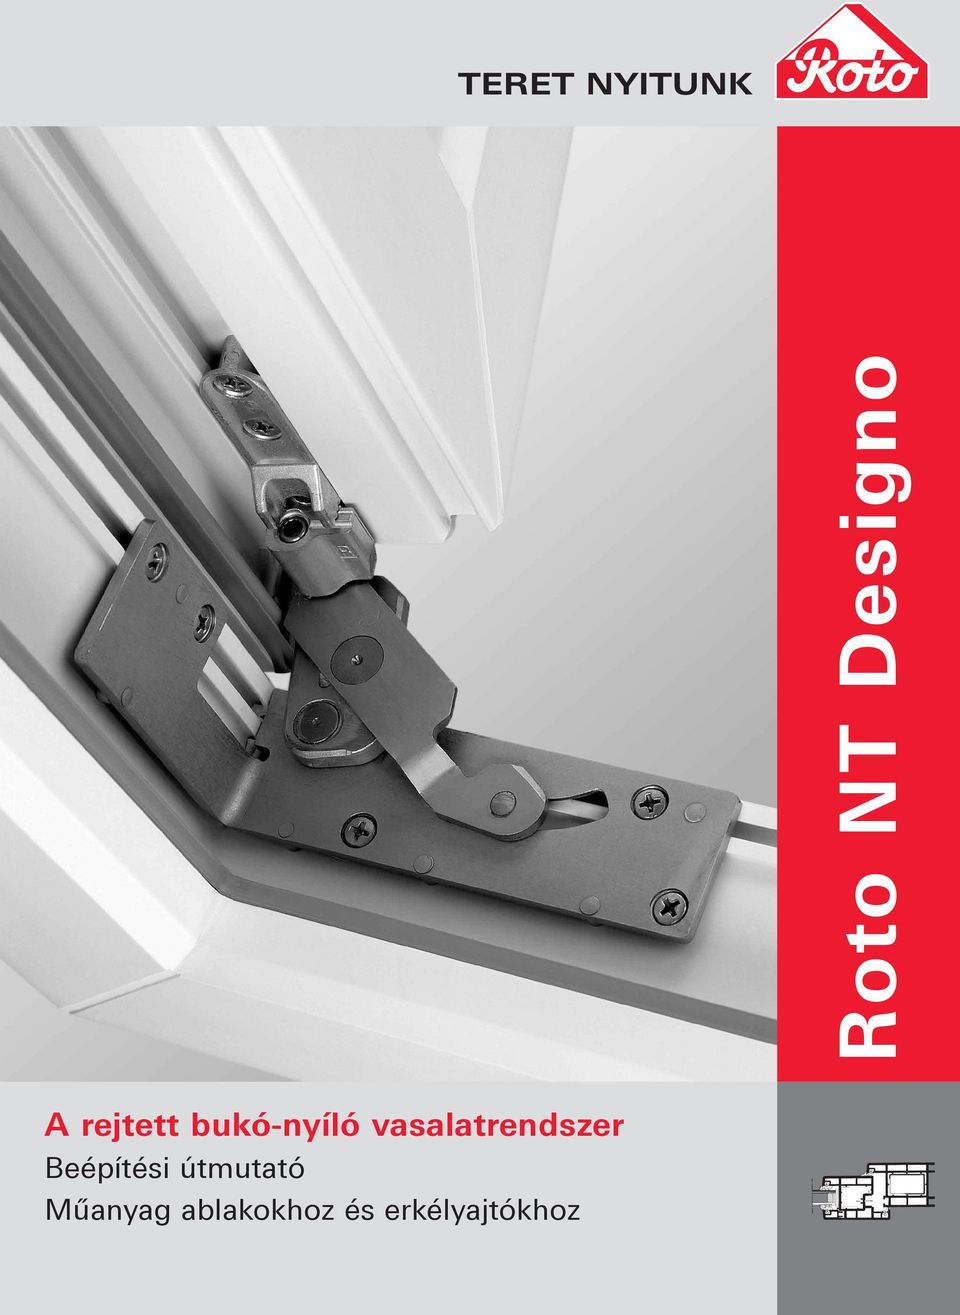 Roto NT Designo. A rejtett bukó-nyíló vasalatrendszer TERET NYITUNK.  Beépítési útmutató Műanyag ablakokhoz és erkélyajtókhoz - PDF Free Download